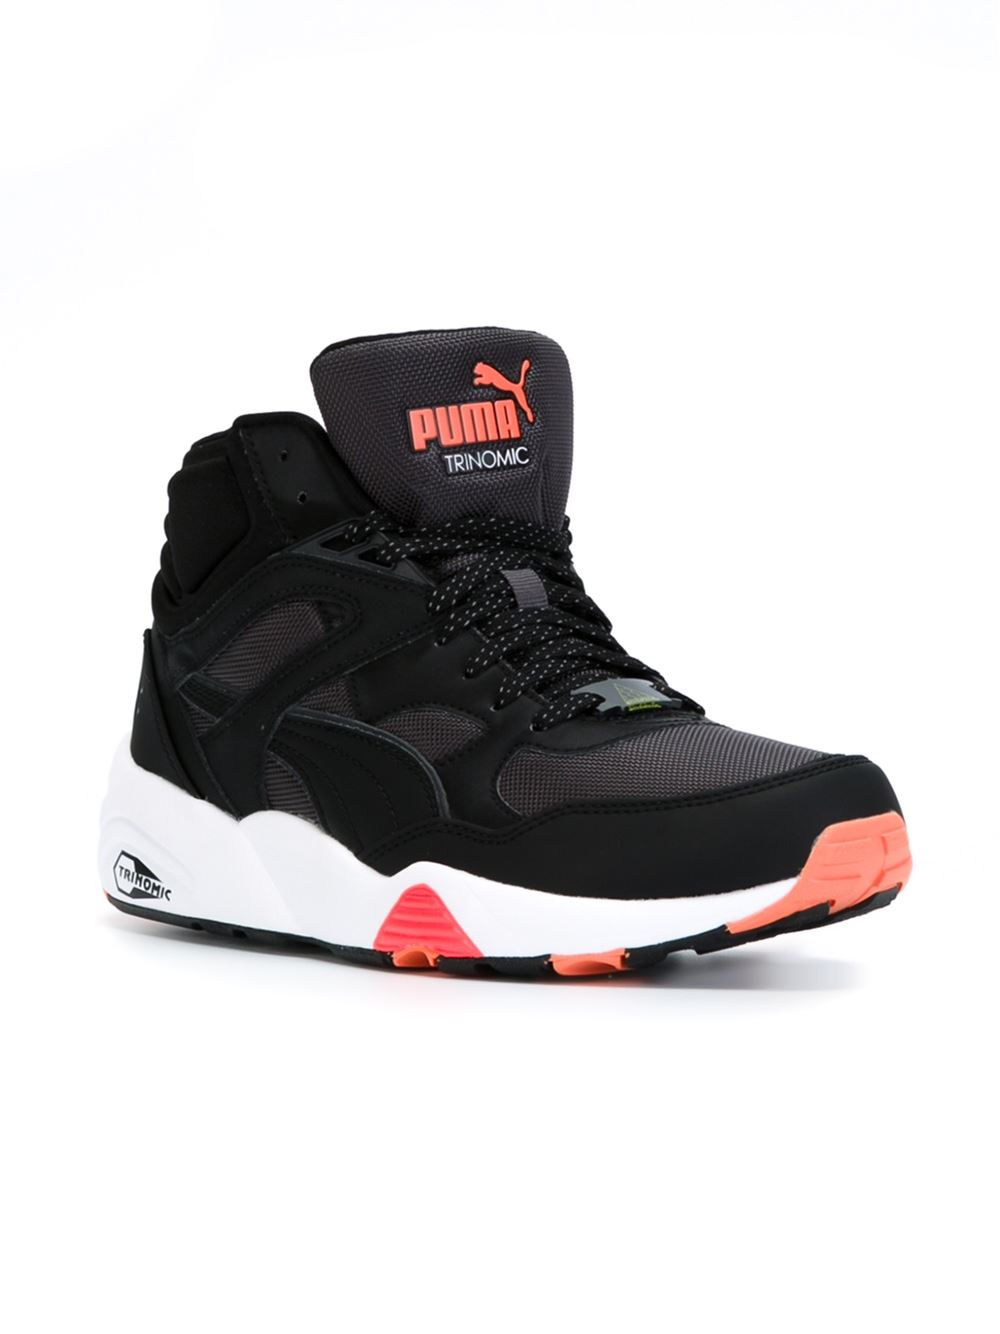 PUMA 'trinomic' Hi-top Sneakers in Black for Men - Lyst